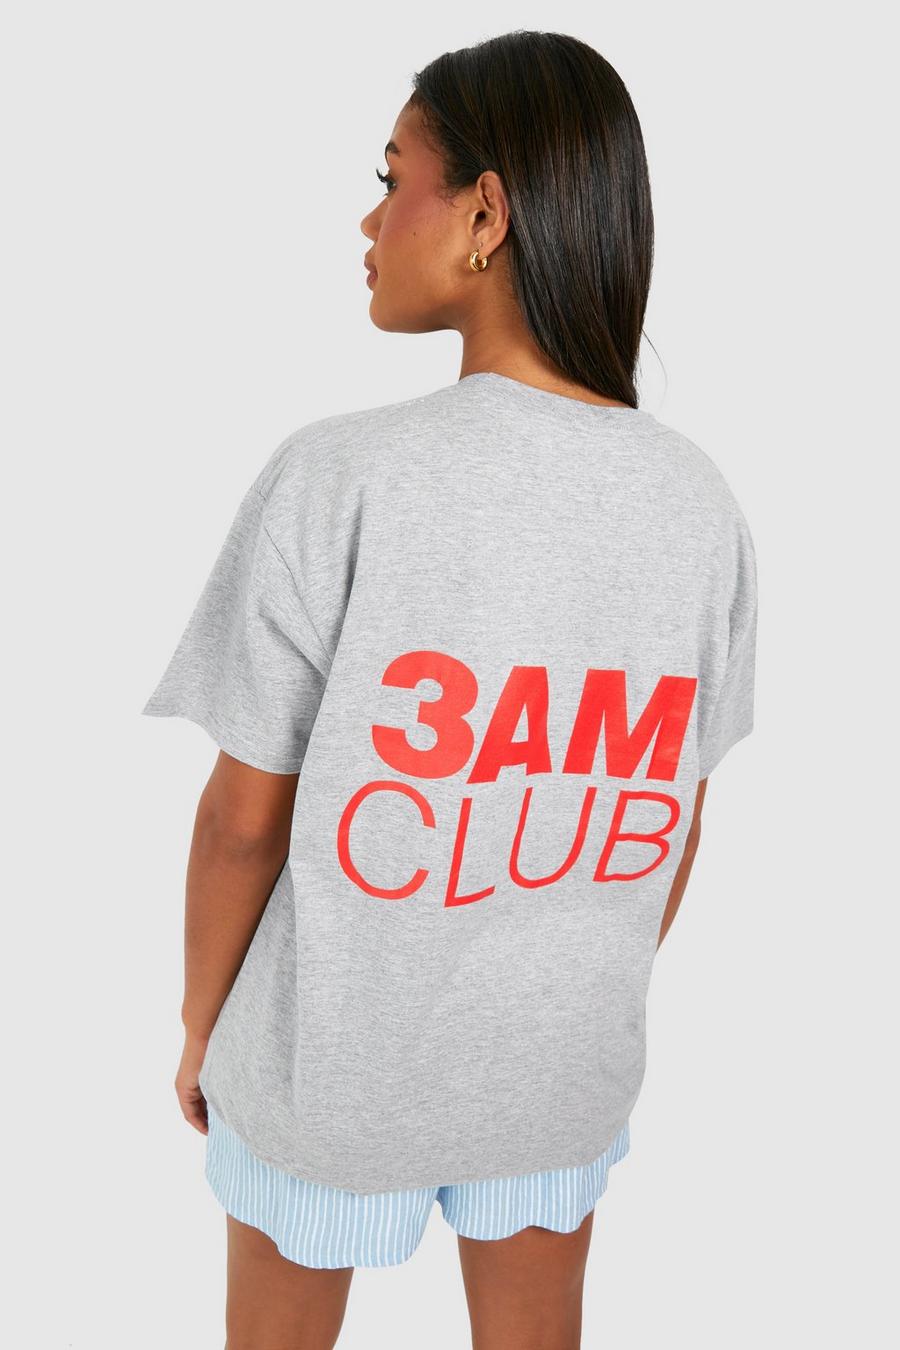 T-shirt oversize en coton à slogan 3am Club, Grey